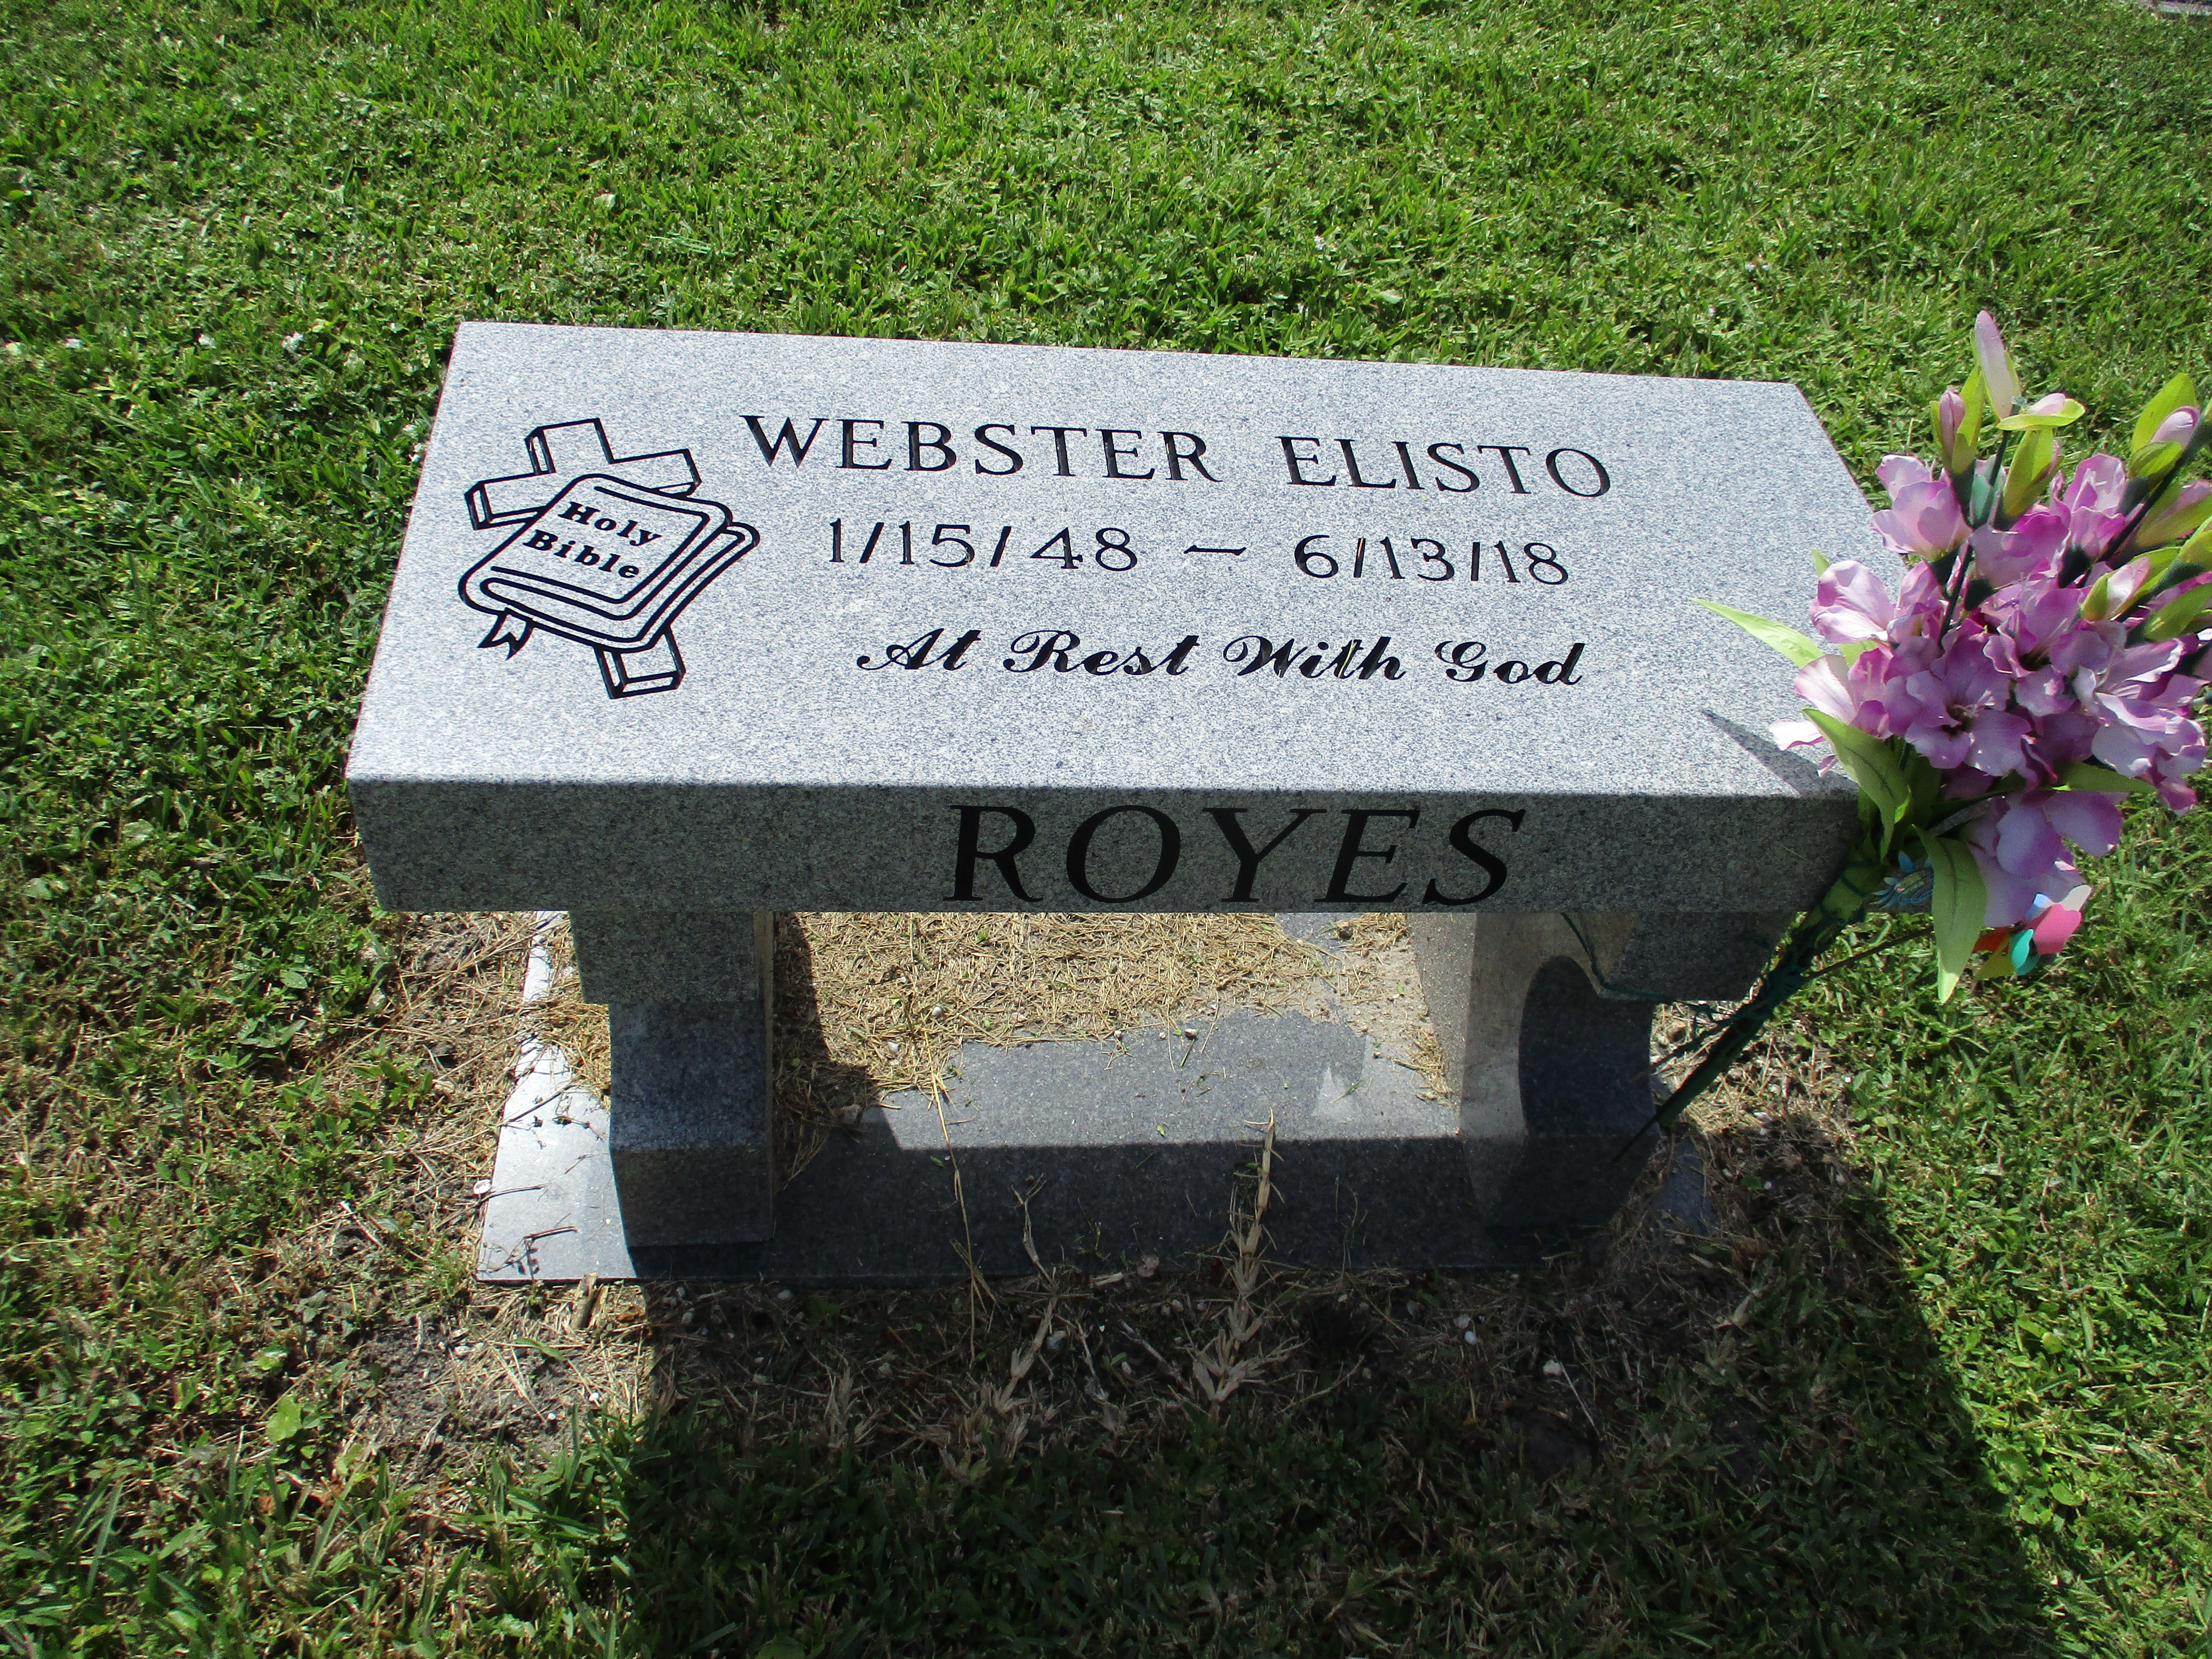 Webster Elisto Royes